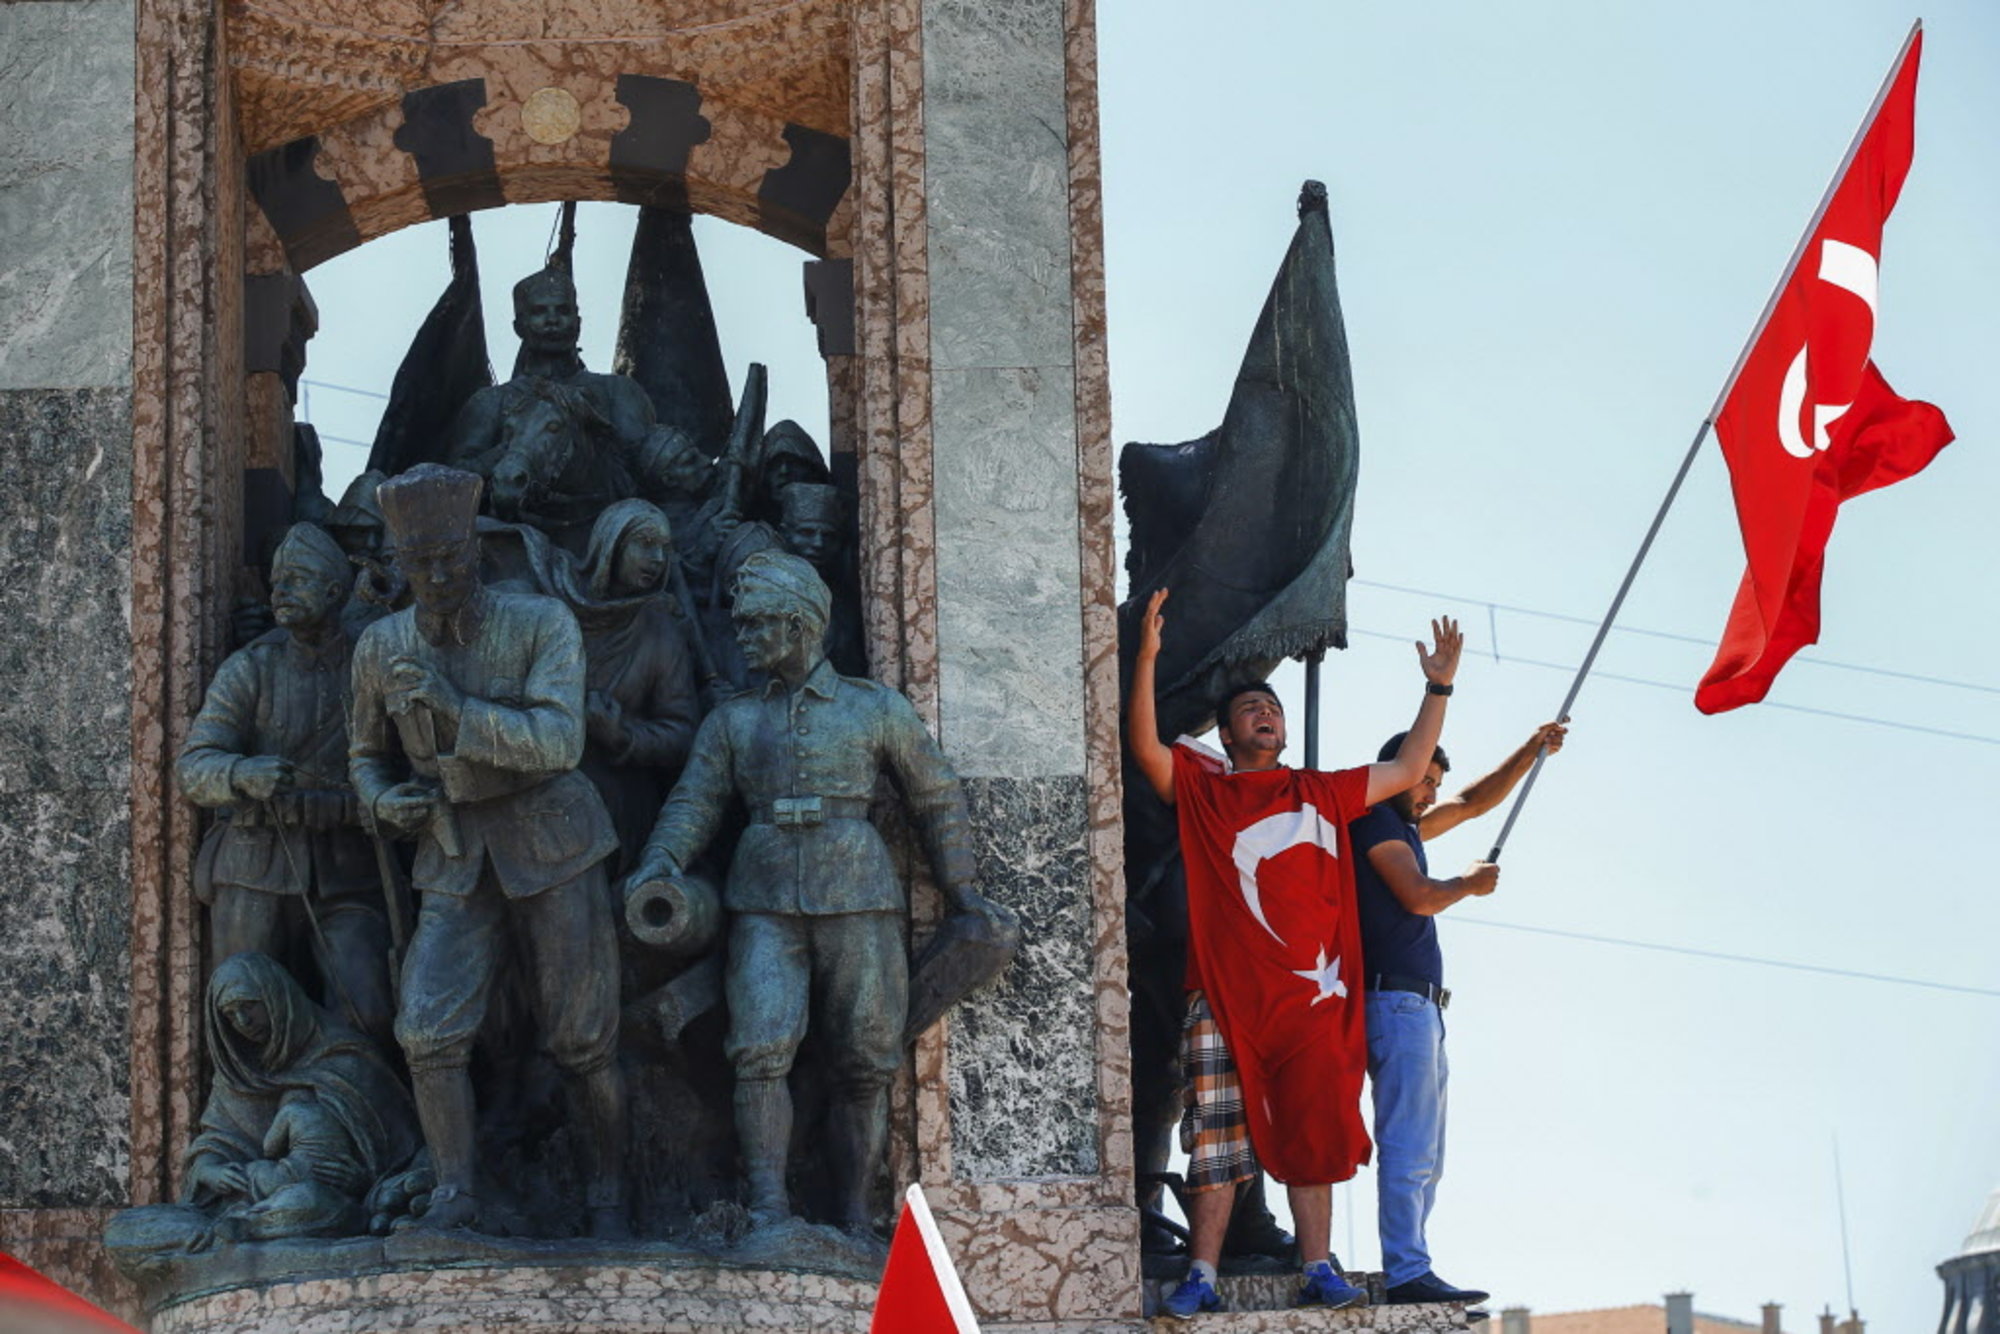 Opinion: Turkey Under Attack